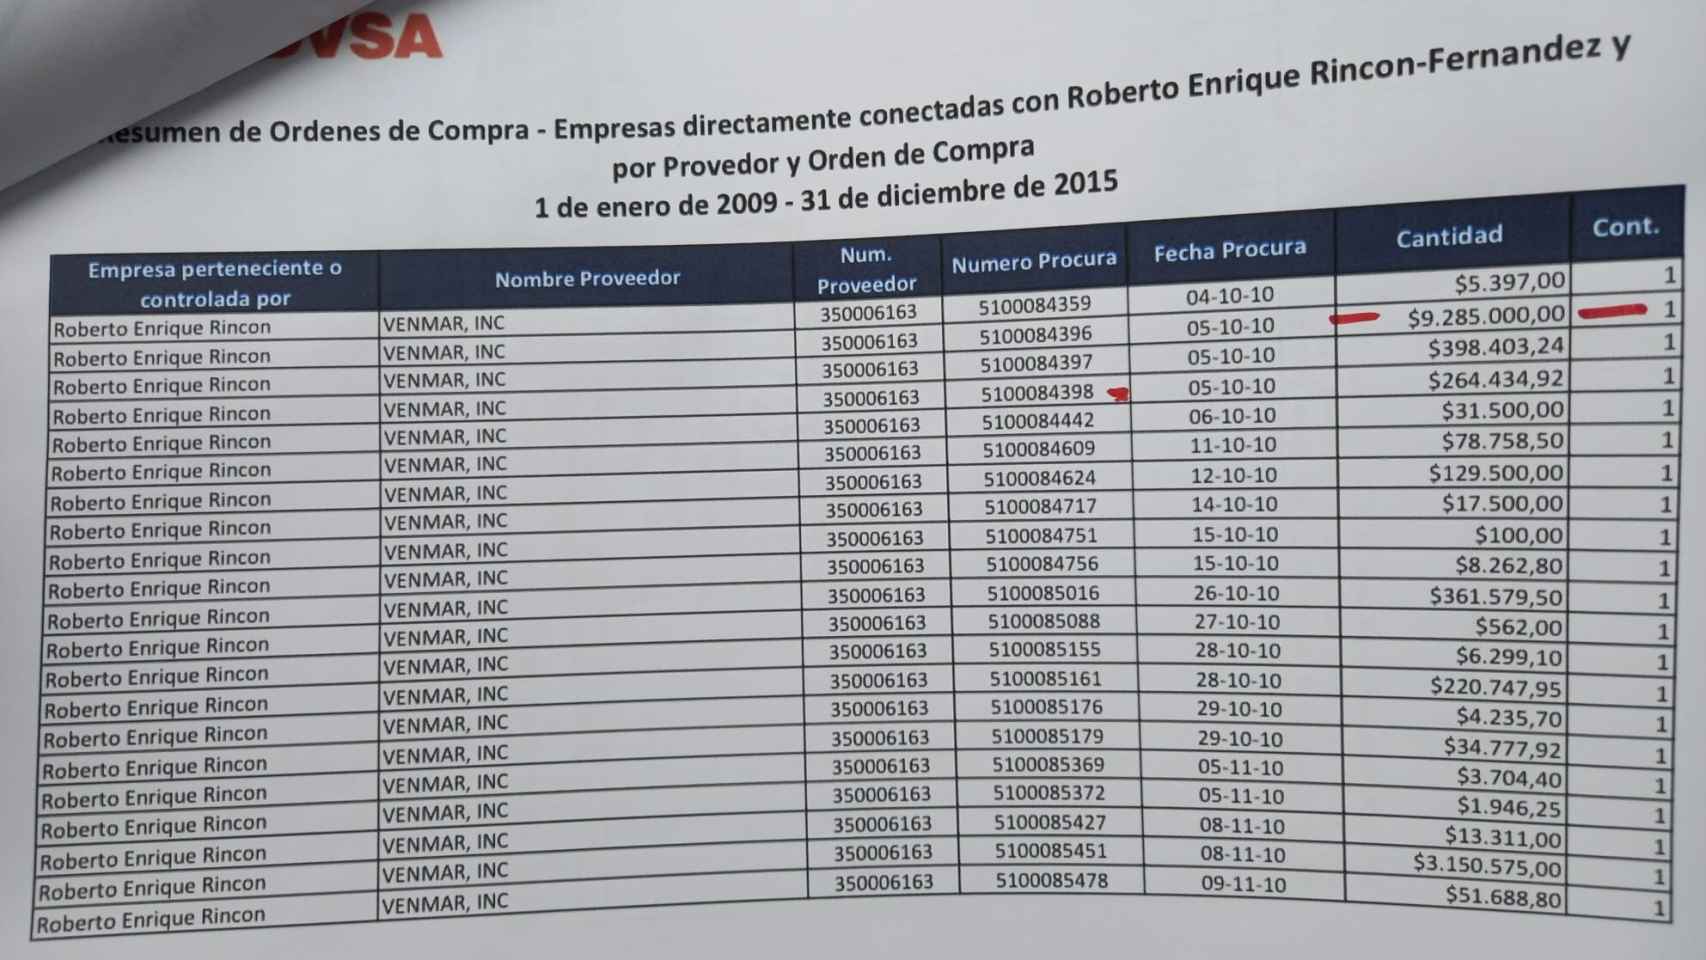 Lista de órdenes de compra de PDVSA a Venmar, en la que han sido eliminados los 17 contratos autorizados por César Rincón Godoy.